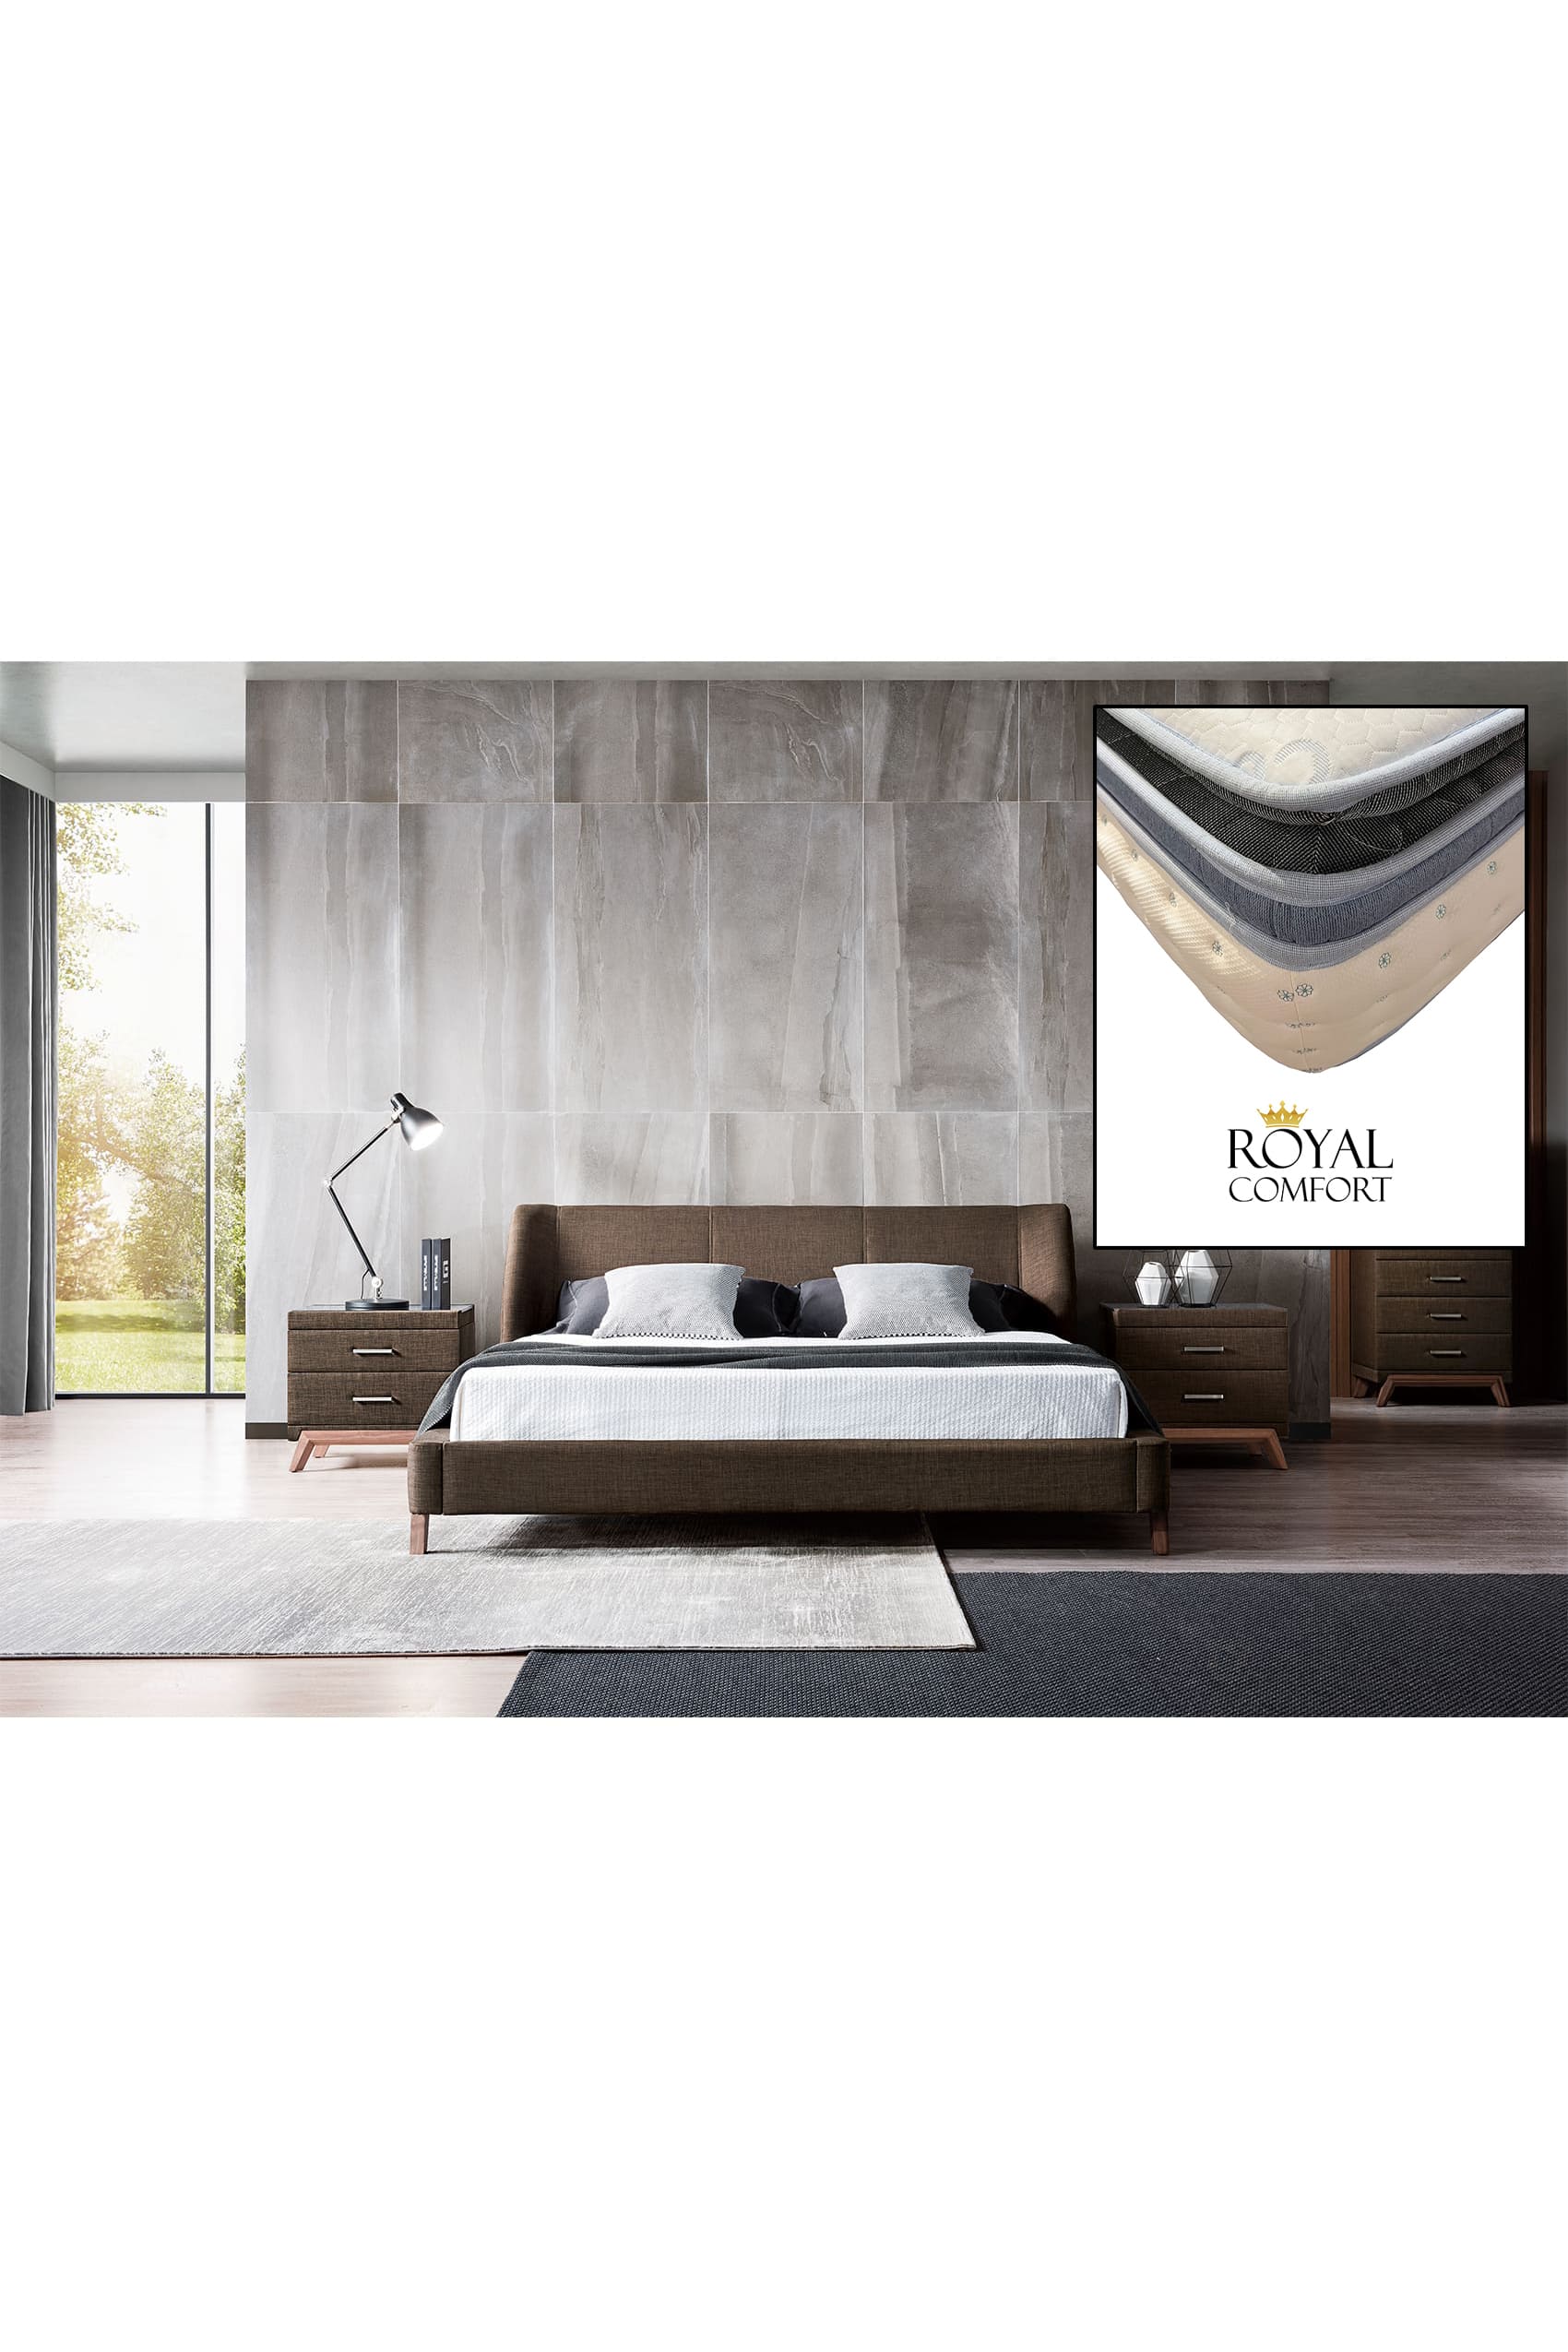 Ander Designer Bed Frame + Royal Comfort Pillow Top Mattress